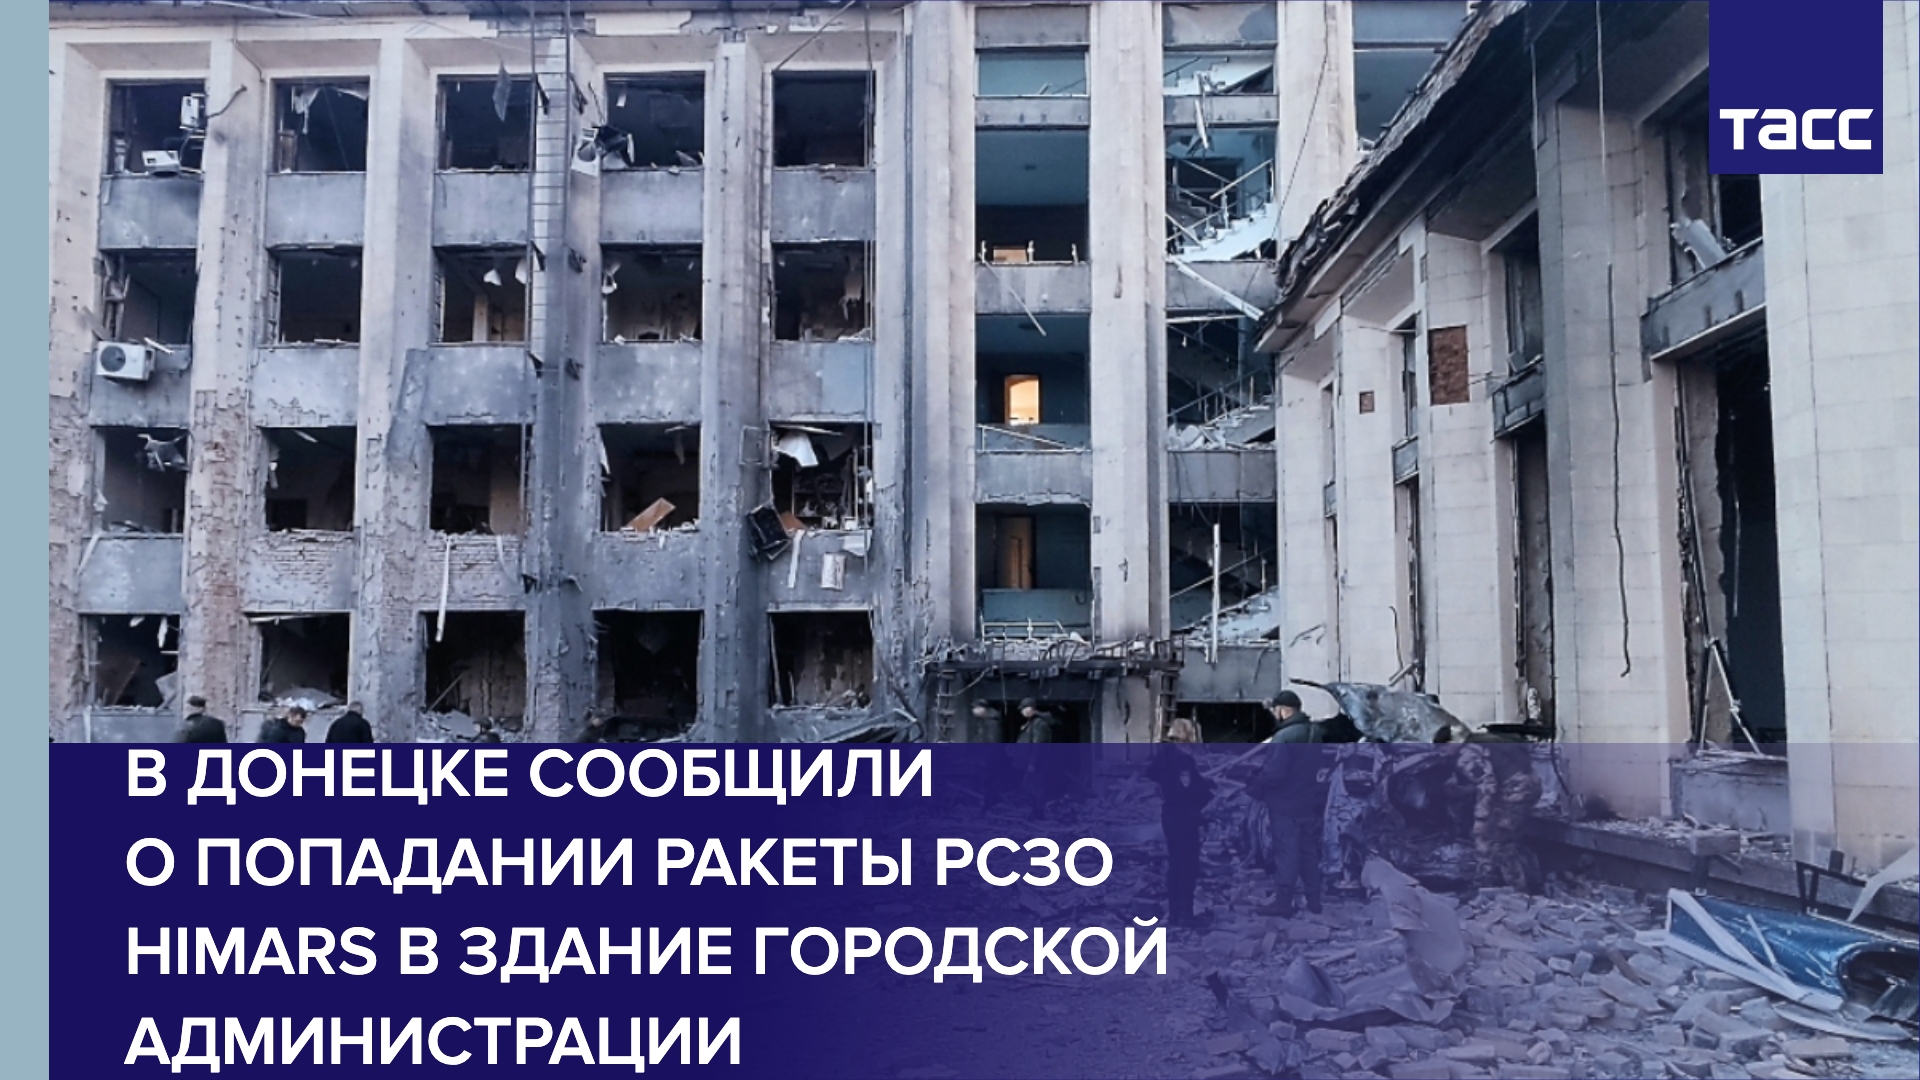 В Донецке сообщили о попадании ракеты РСЗО HIMARS в здание городской администрации